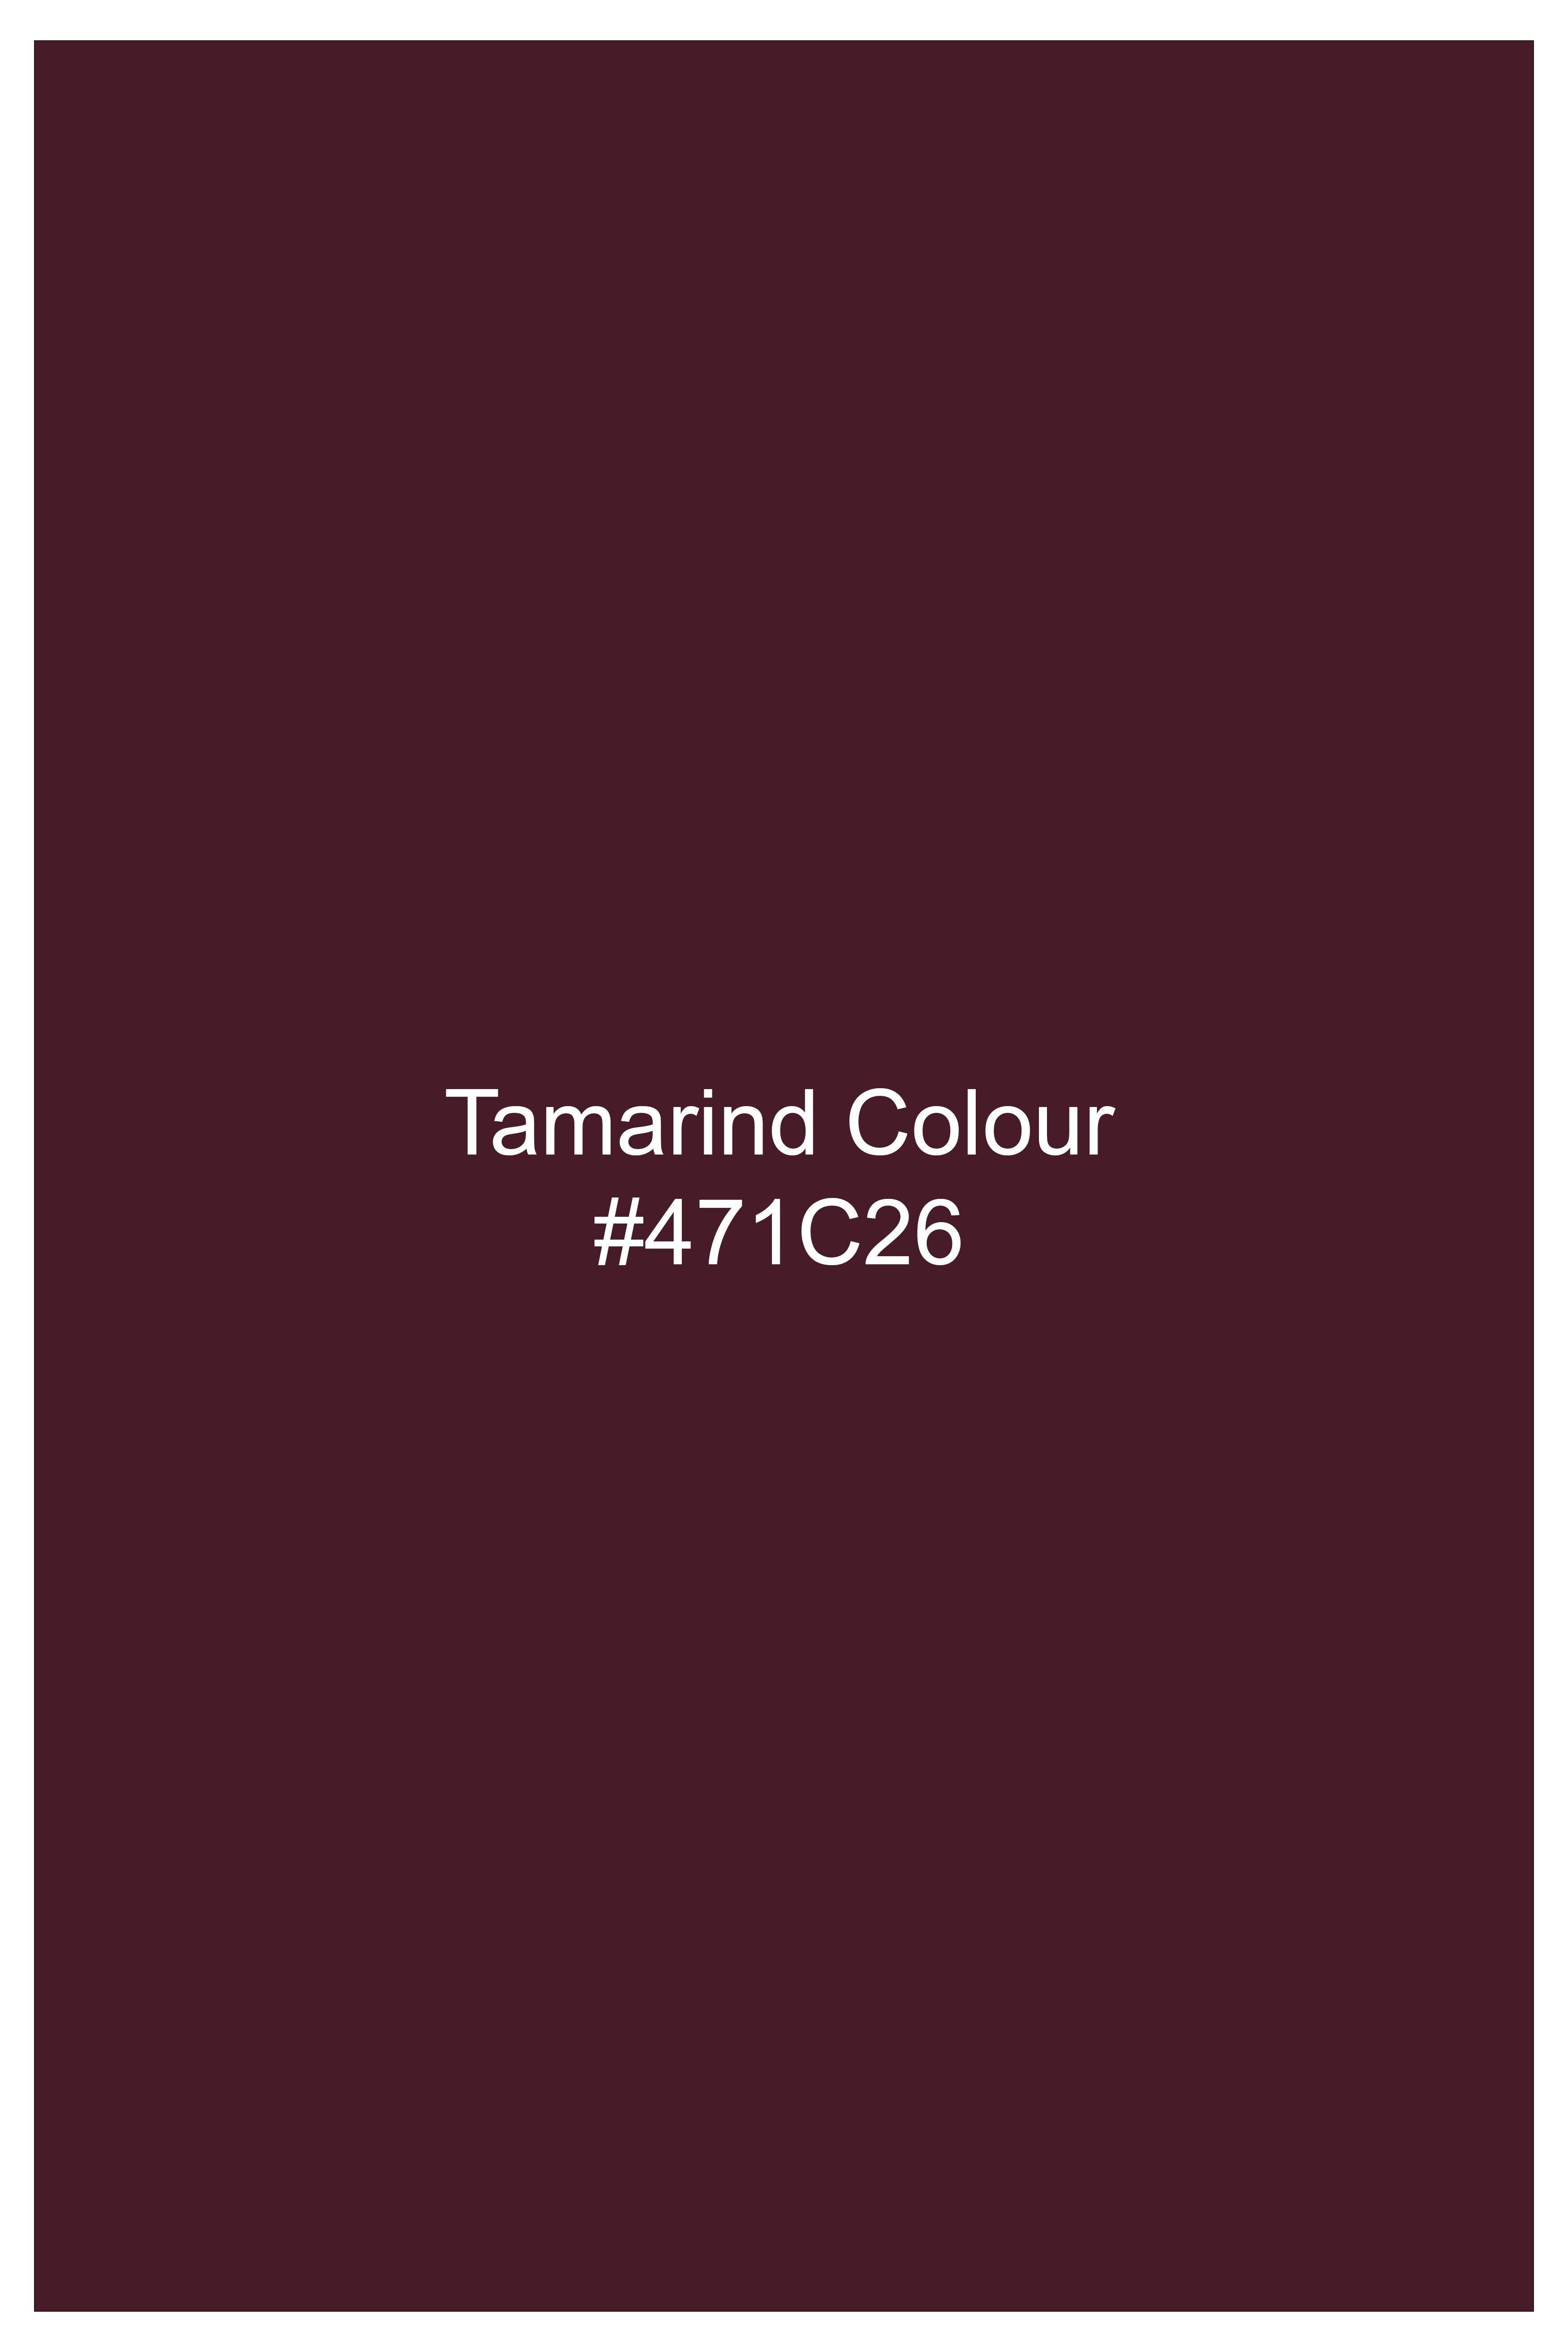 Tamarind Maroon Wool Blend Single Breasted Suit